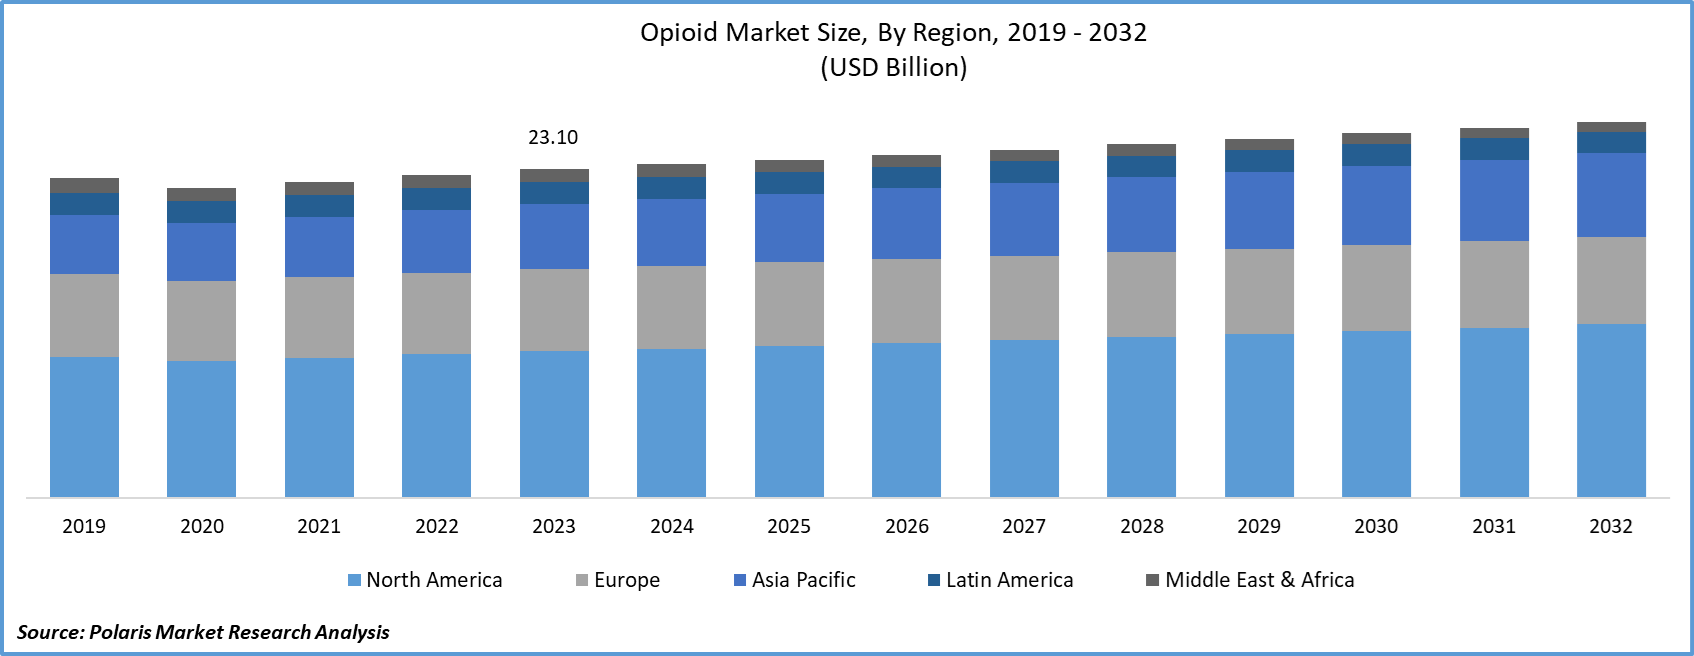 Opioid Market Size